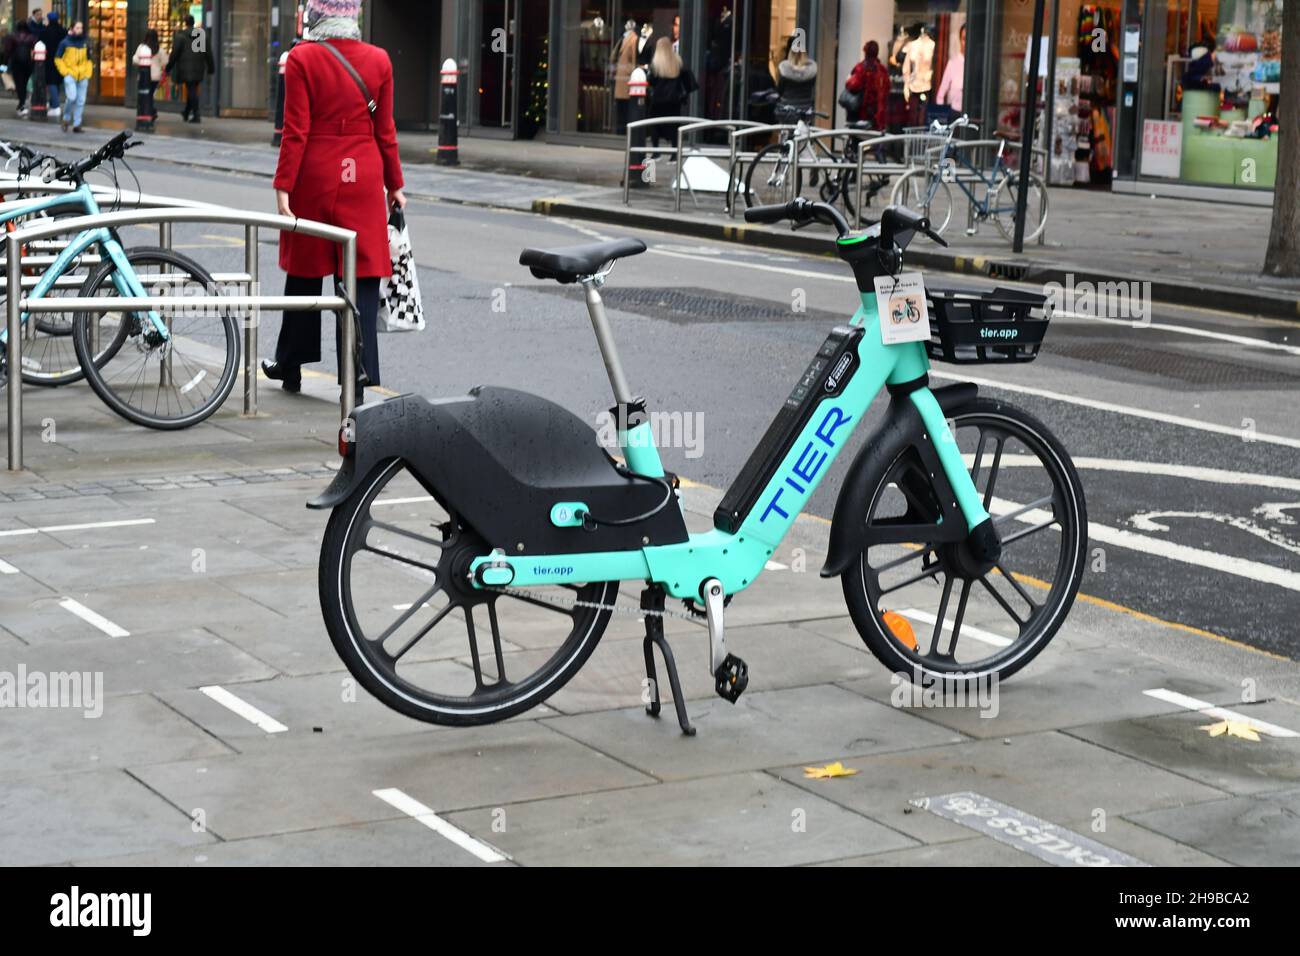 Una bicicletta elettrica Tier marina Aqua sul suo stand in attesa di essere affittato su una strada a Londra Foto Stock